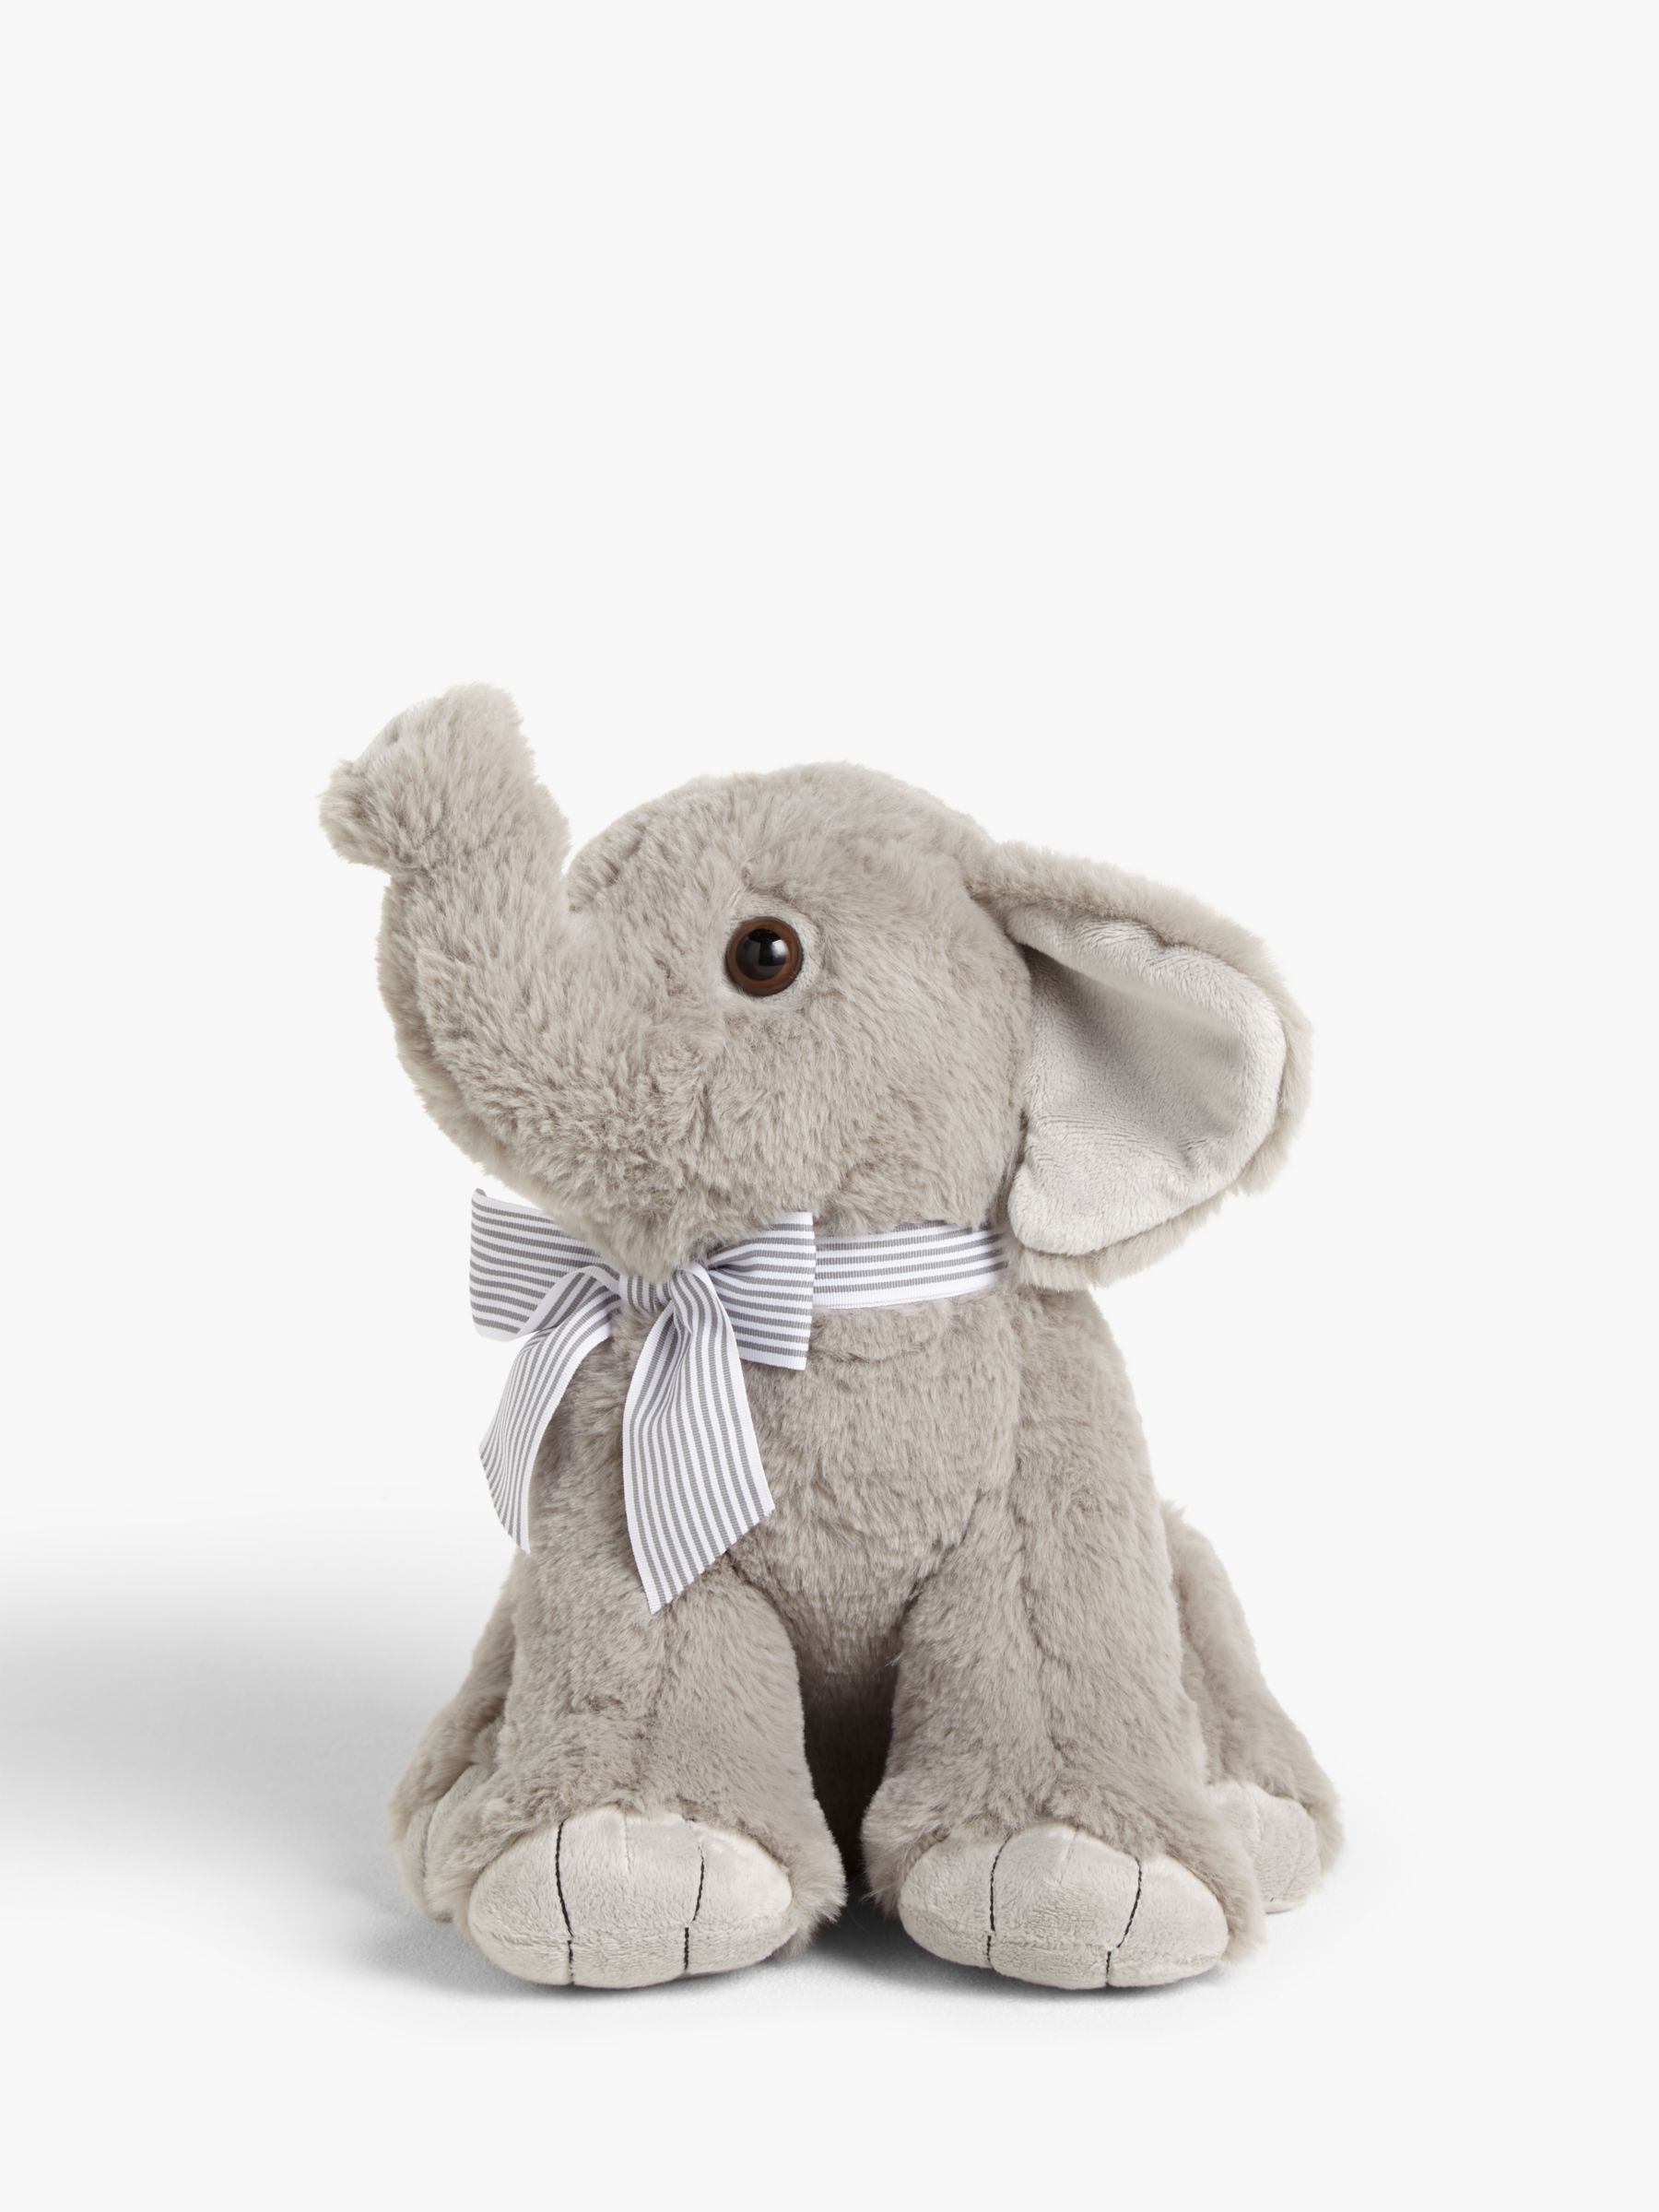 elephant toys online